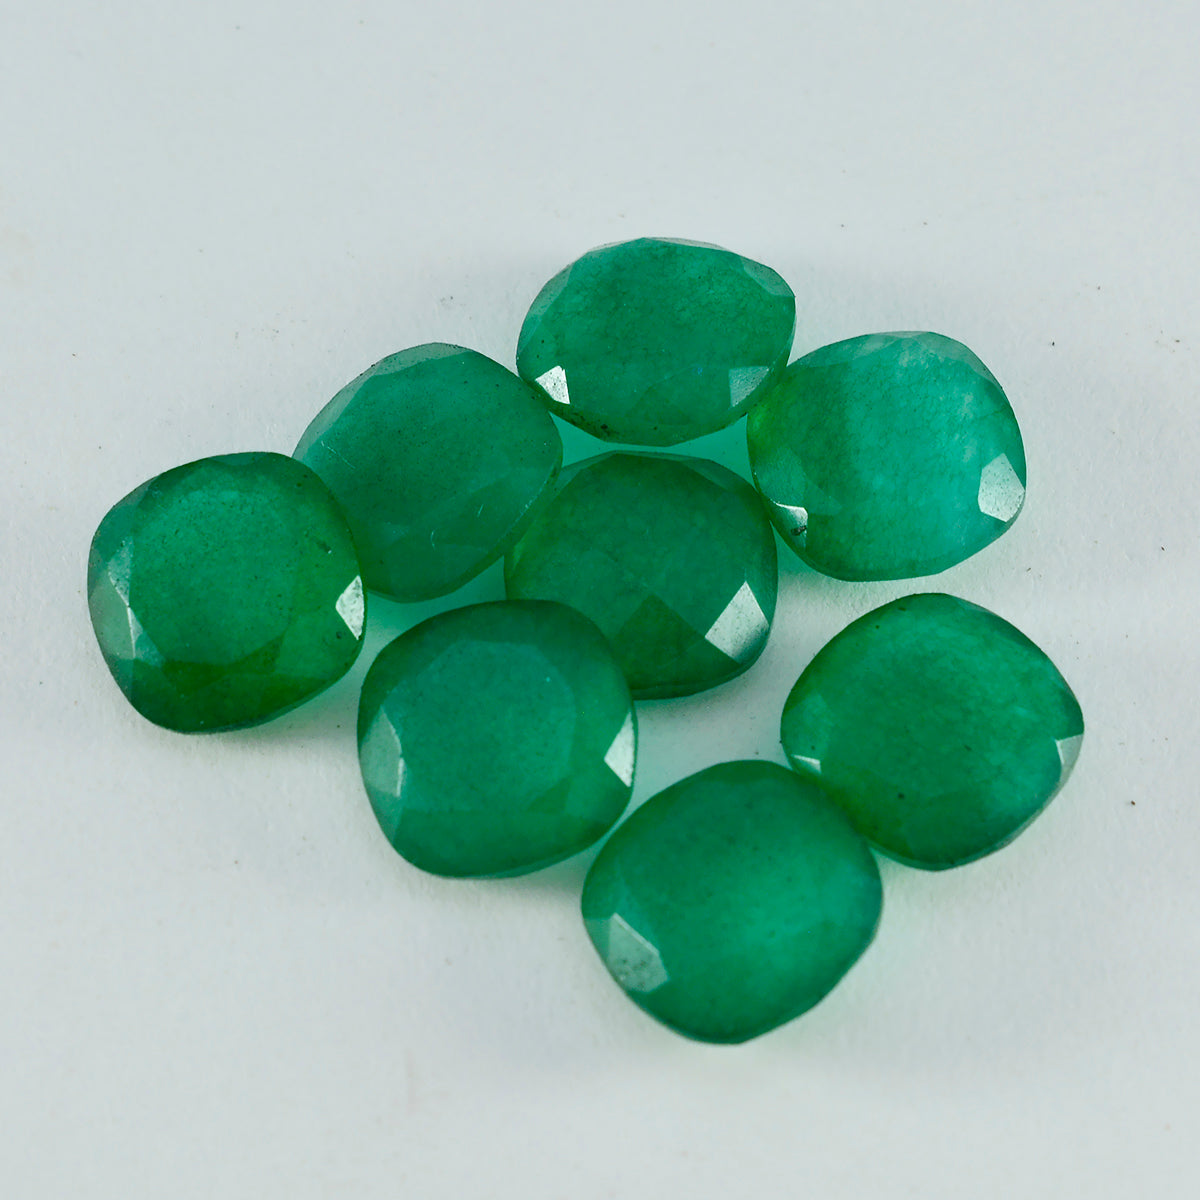 riyogems 1 шт. настоящая зеленая яшма граненая 6x6 мм в форме подушки хорошее качество свободный драгоценный камень